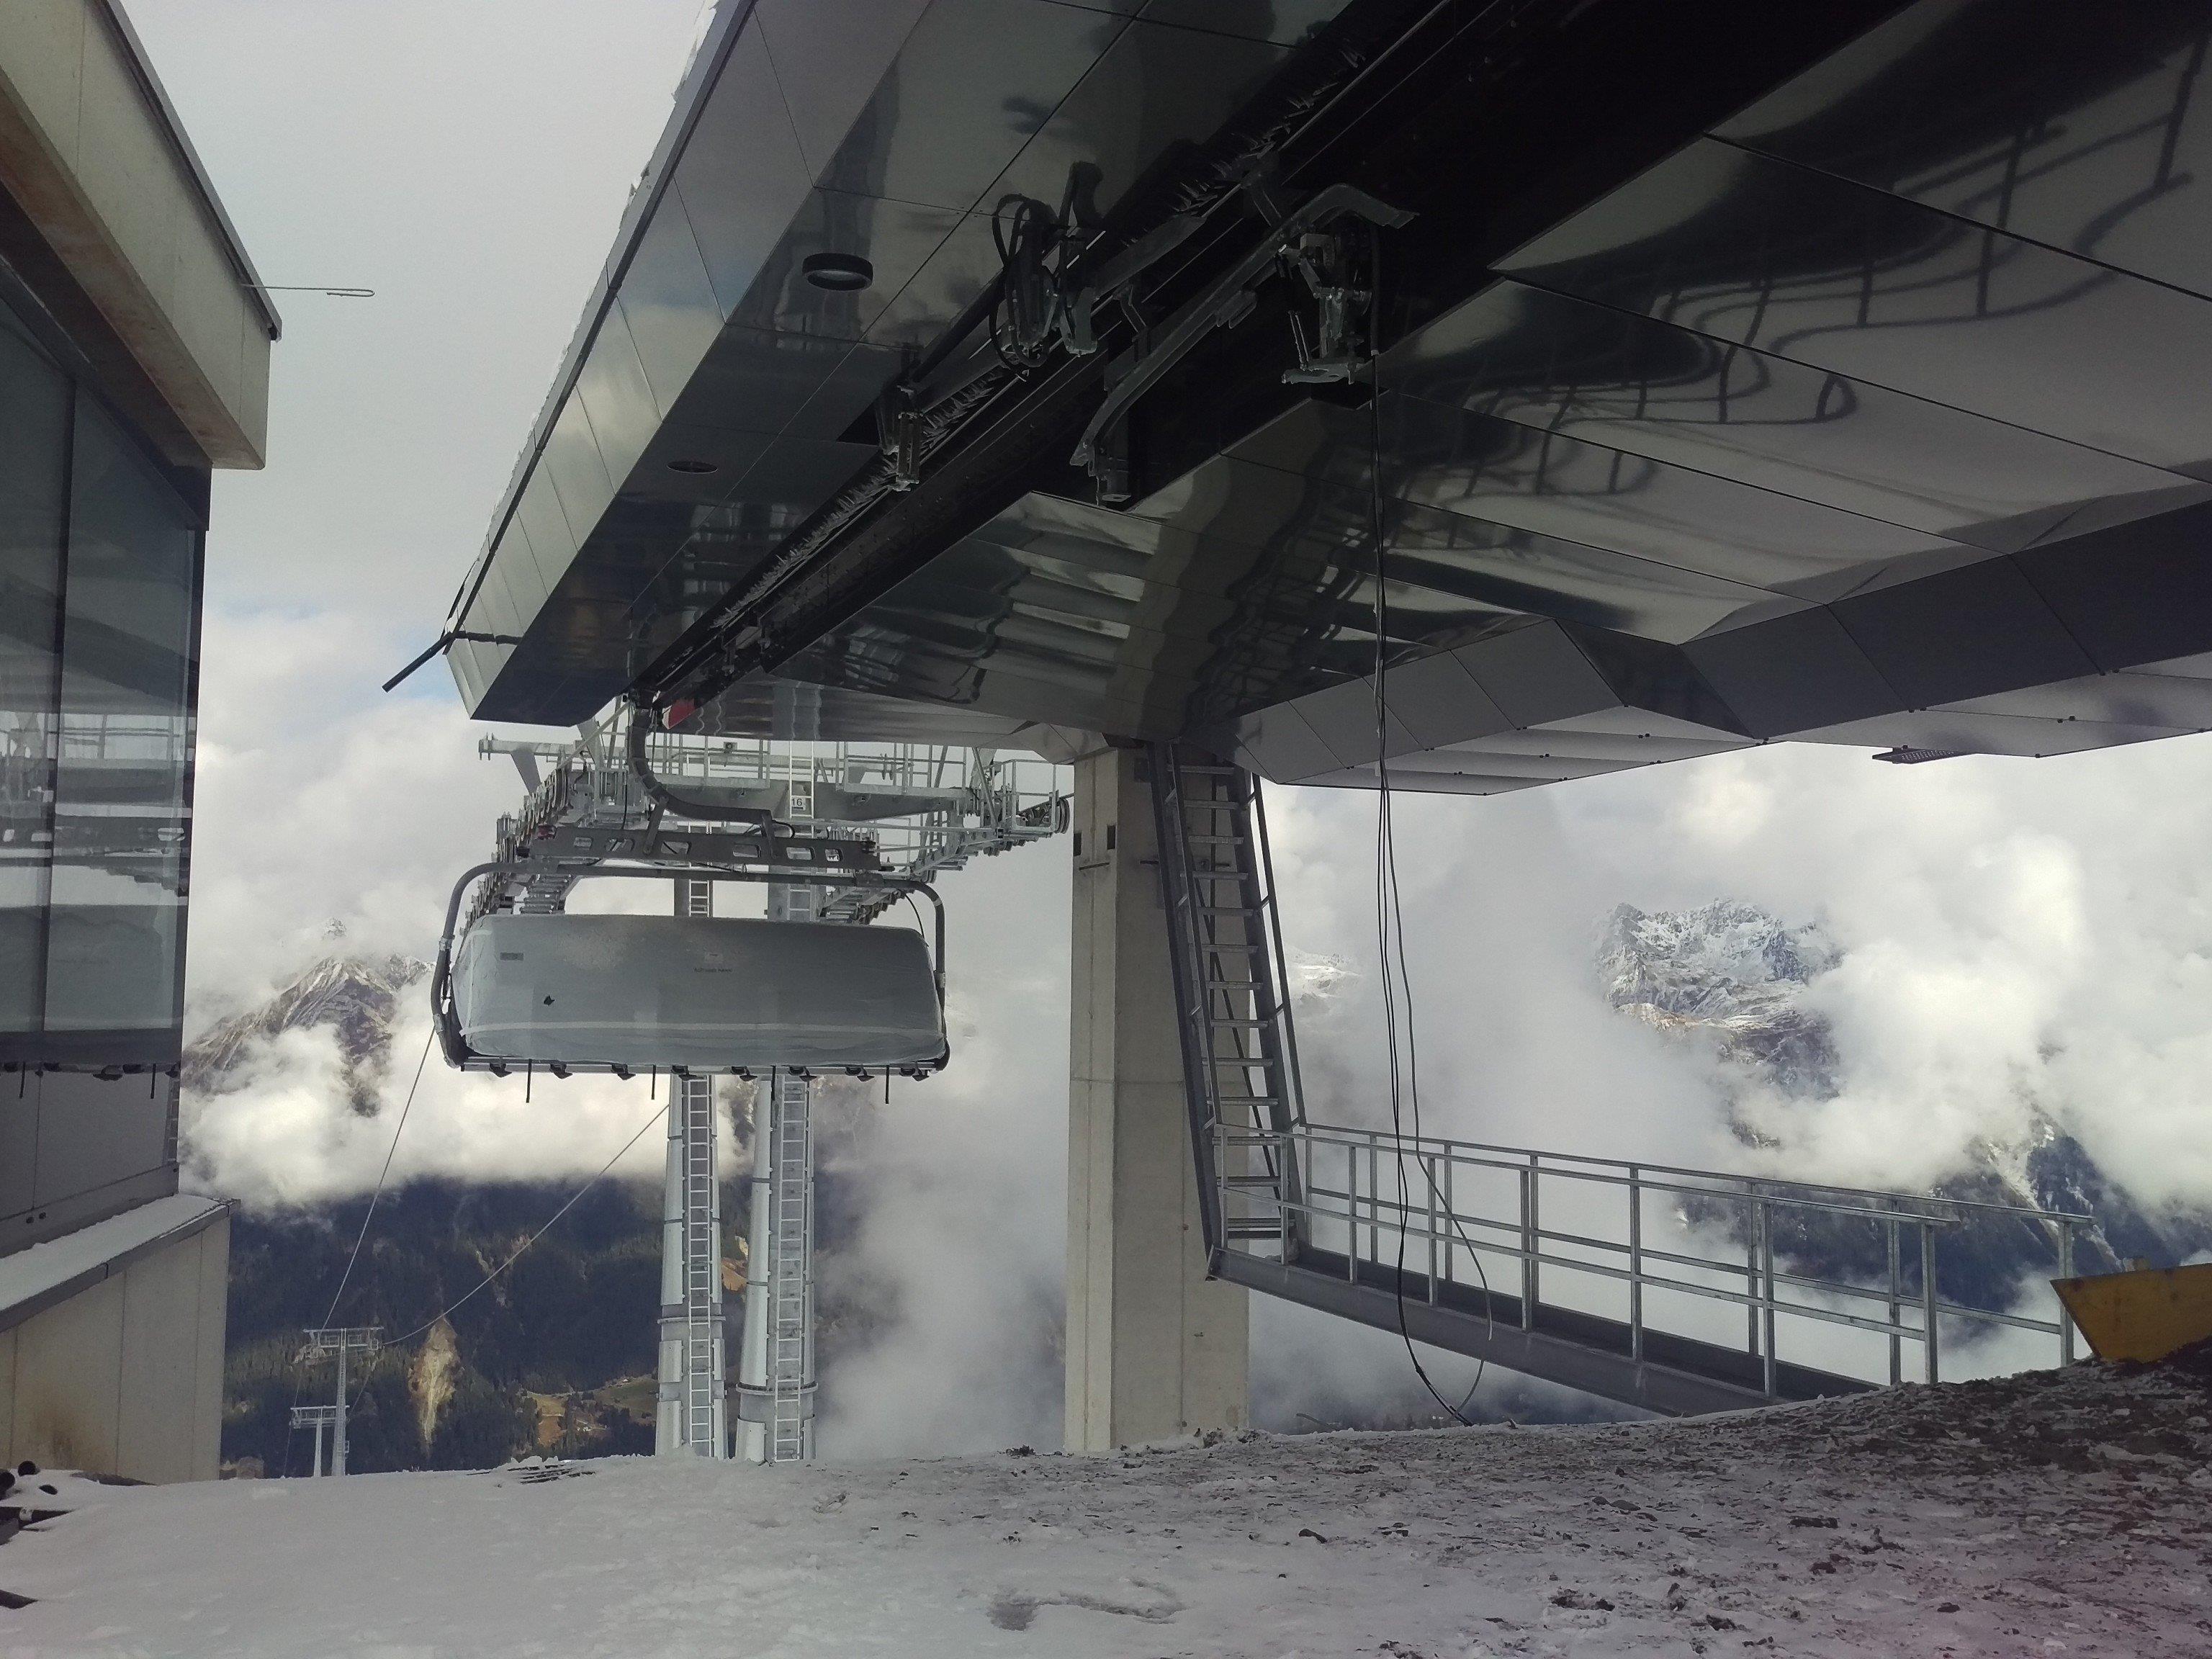 Die Bauarbeiten an der neuen Silvretta Bahn im Silvretta Montafon sind fast abgeschlossen. Bevor sie am 10. Dezember ihren regulären Betrieb aufnimmt, sind noch mehrere Testfahrten nötig.